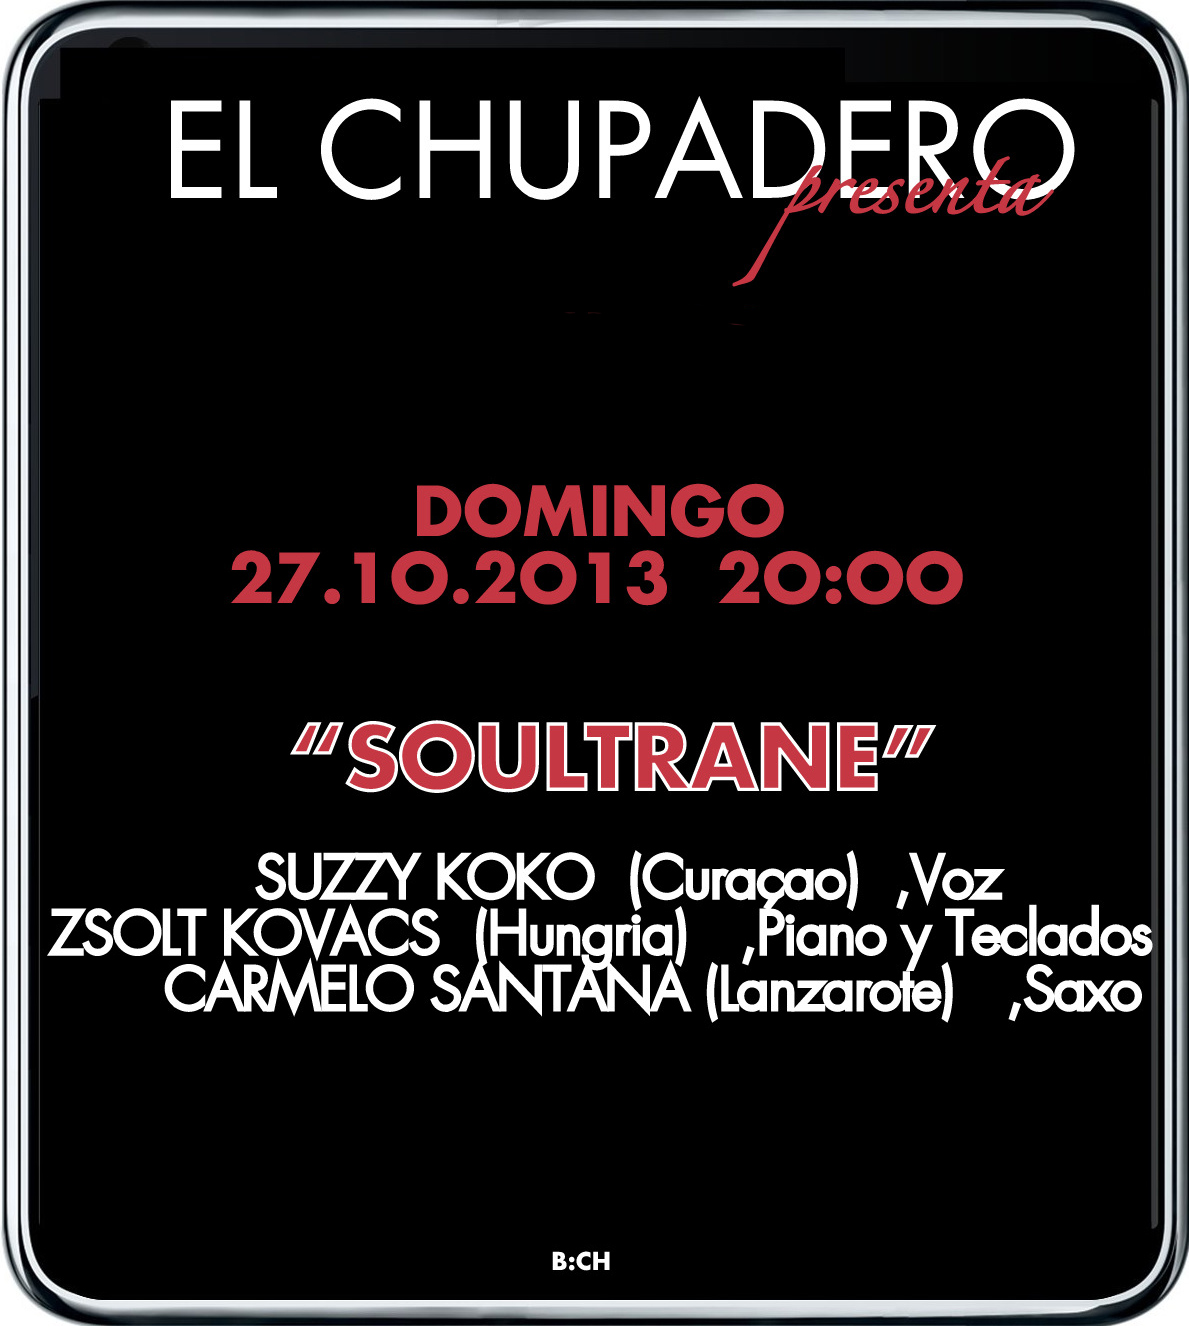 Música en vivo con Soultrane en El Chupadero 